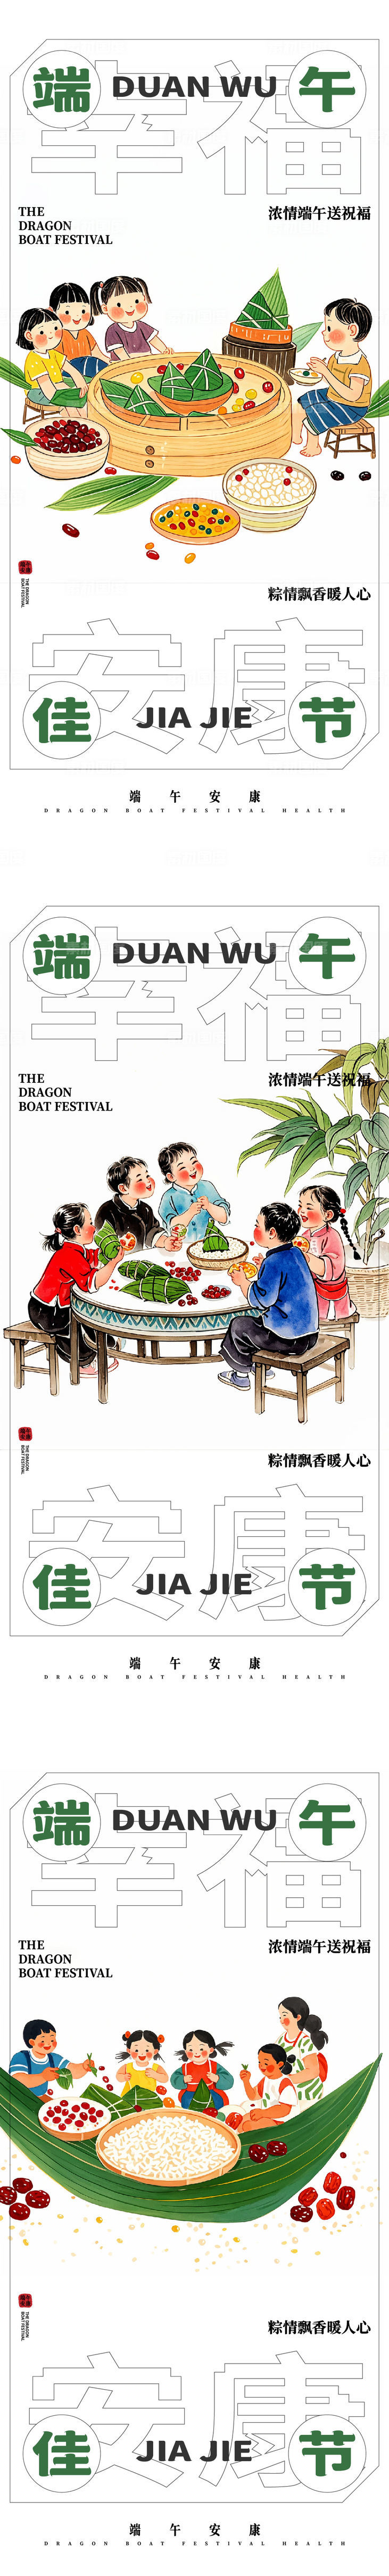 端午节绿色粽子端阳节龙舟节重午节重五节天中节传统节日